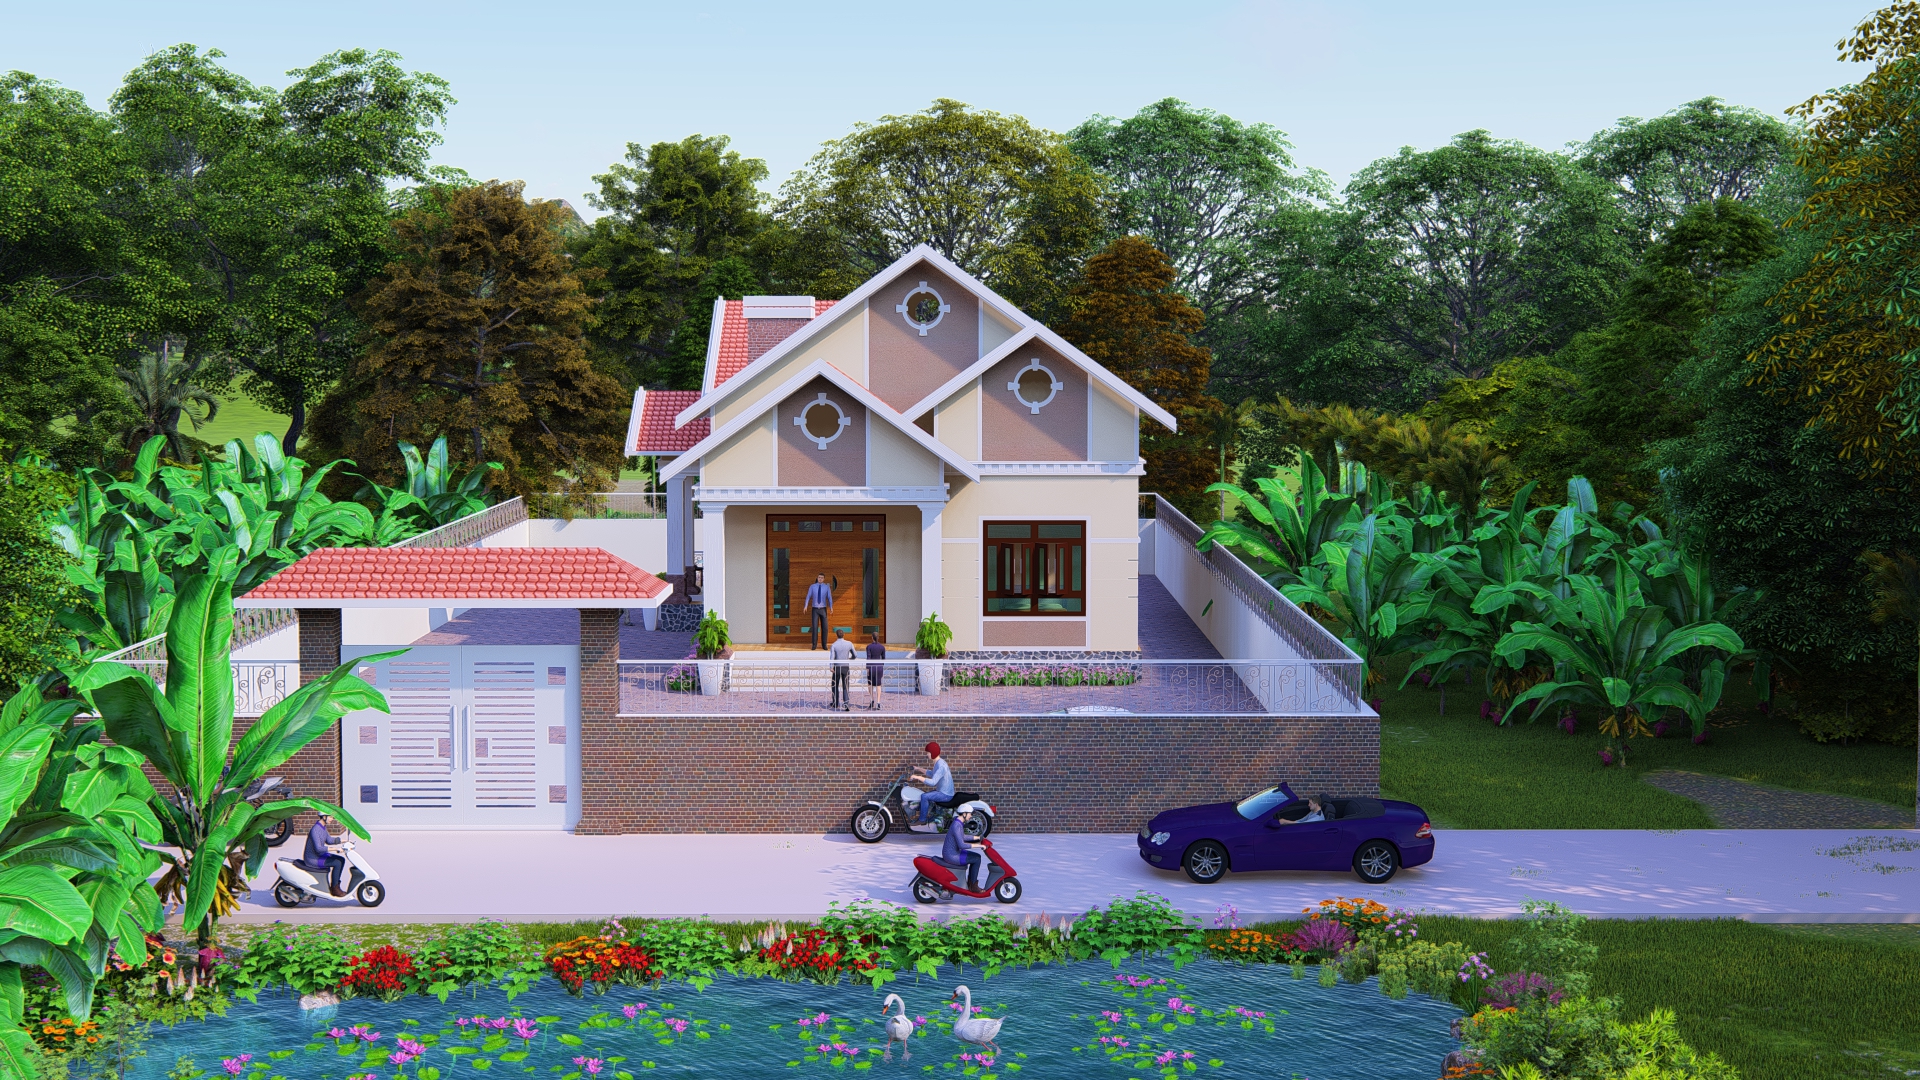 Thiết kế Nhà tại Lạng Sơn NHÀ VƯỜN MÁI THÁI 1574063821 4